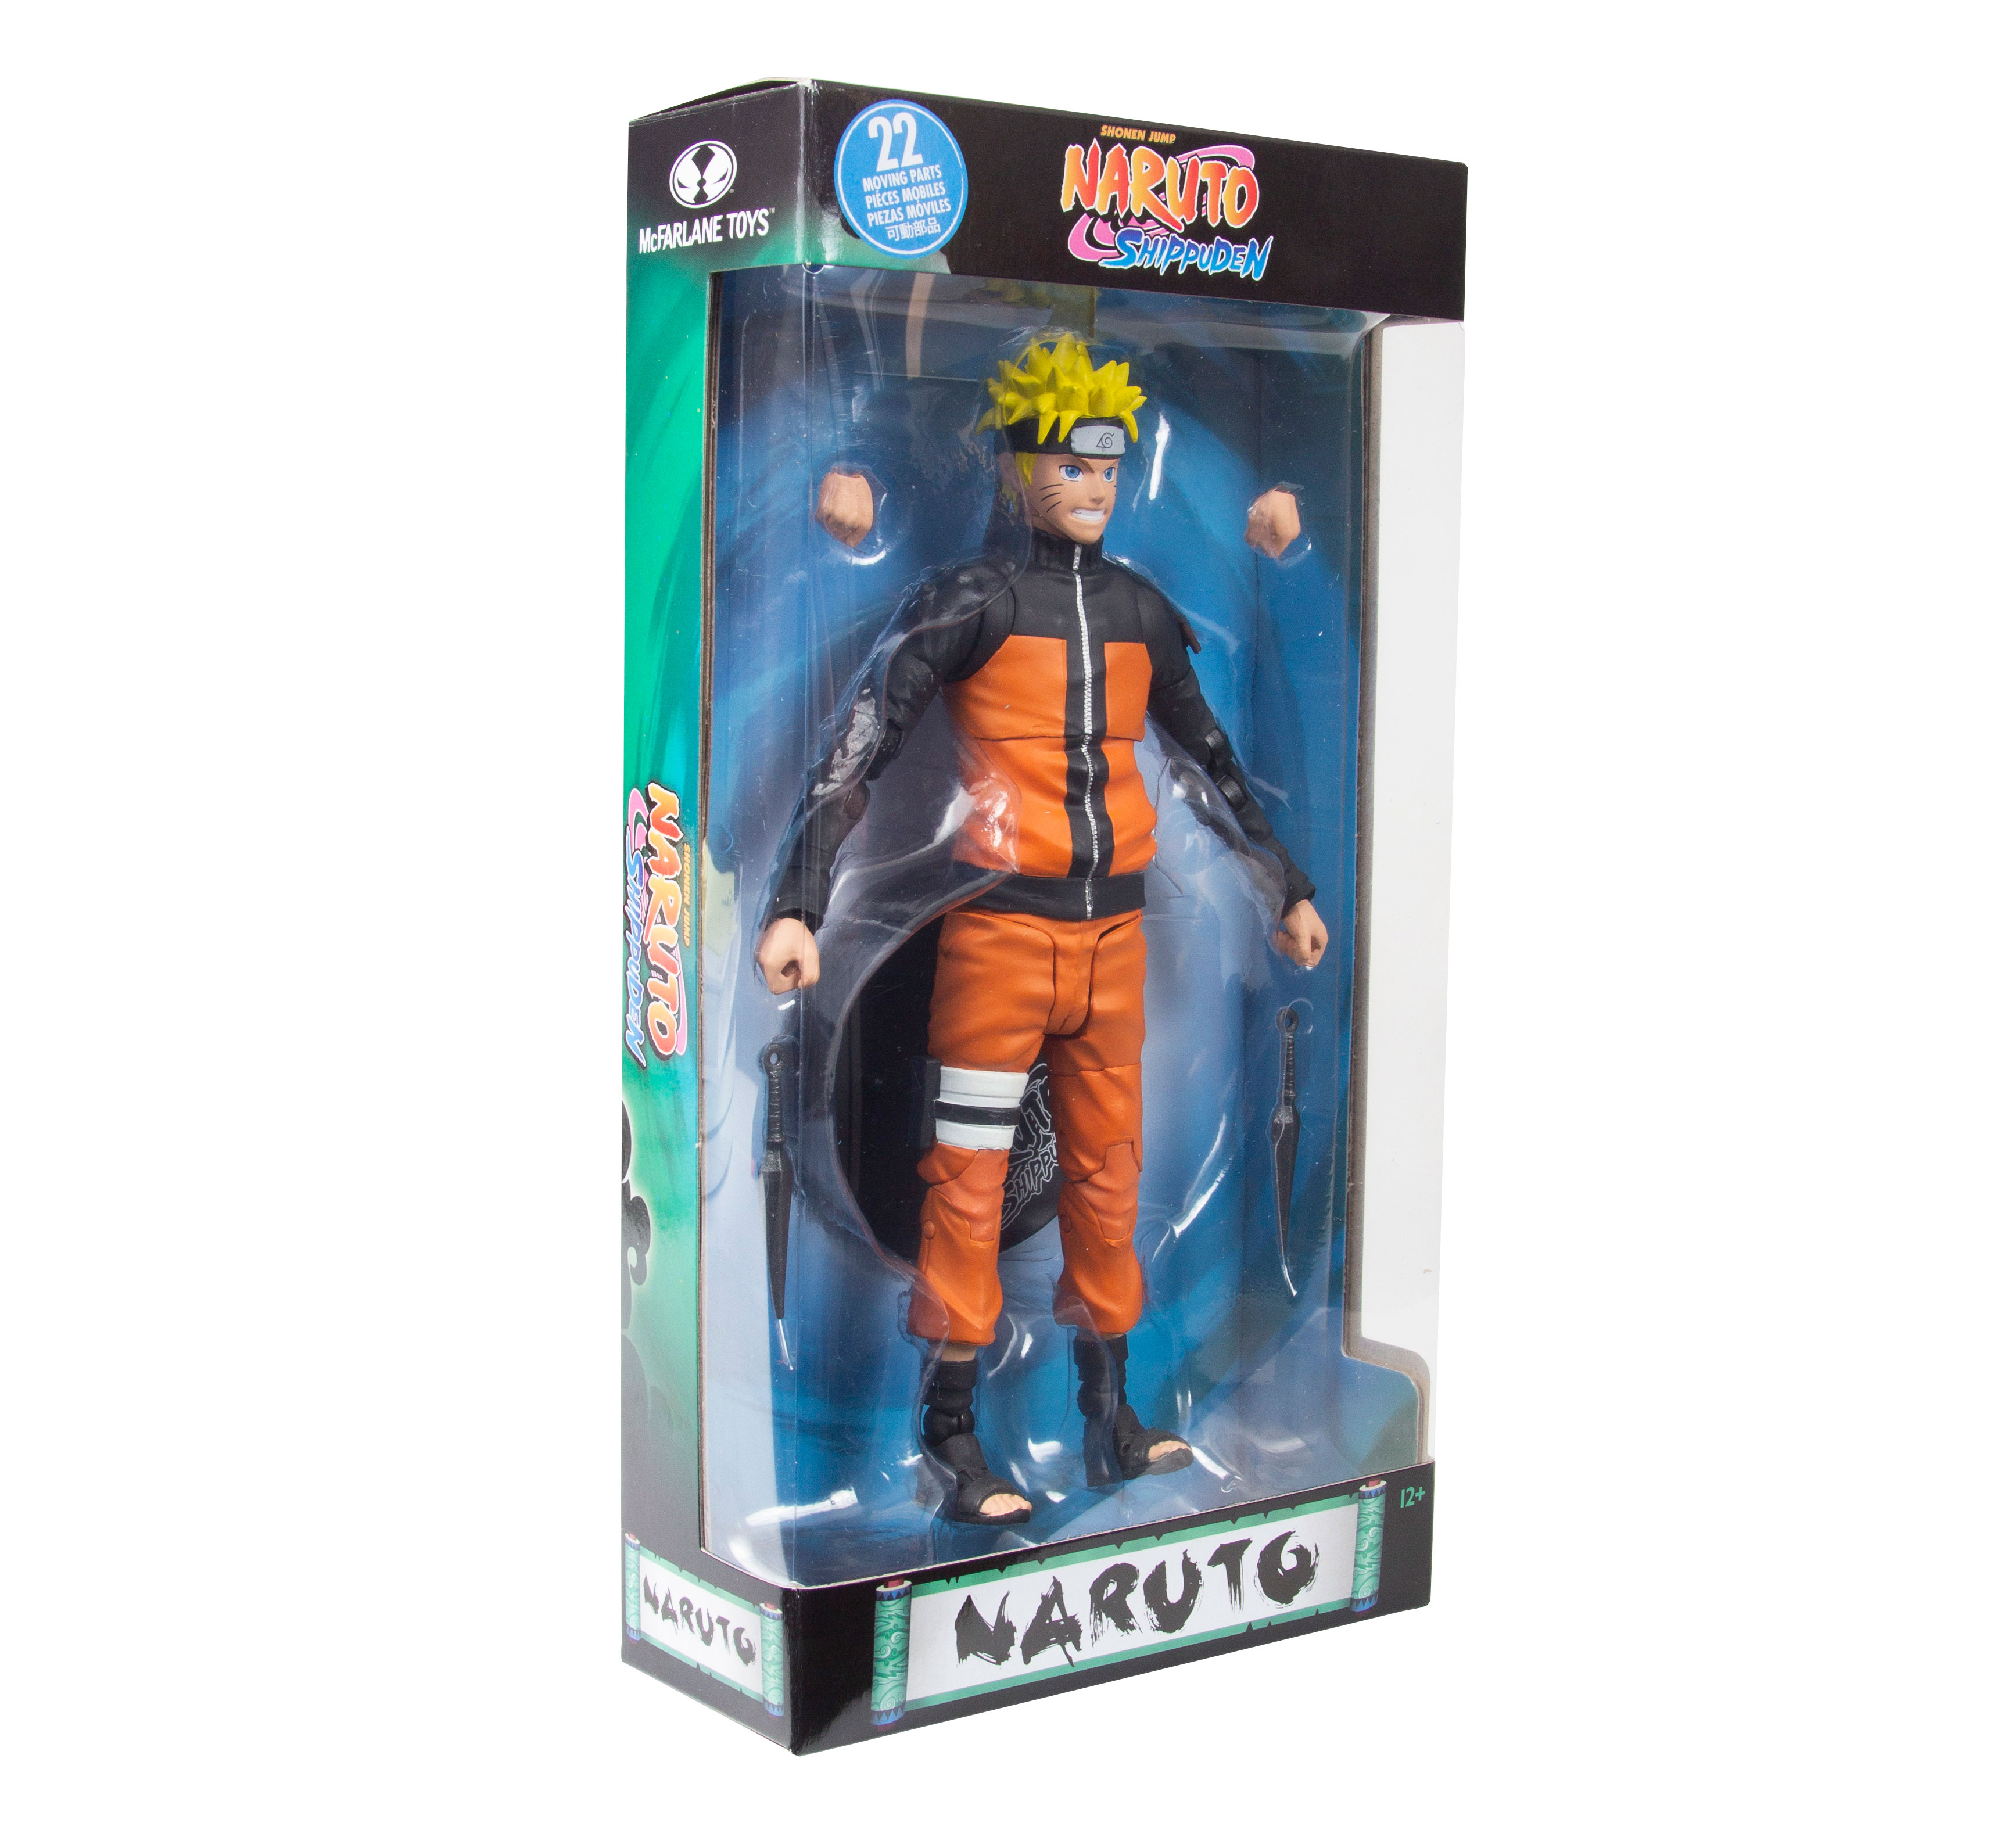 Naruto Action Figure McFarlane NARUTO SHIPPUDEN 